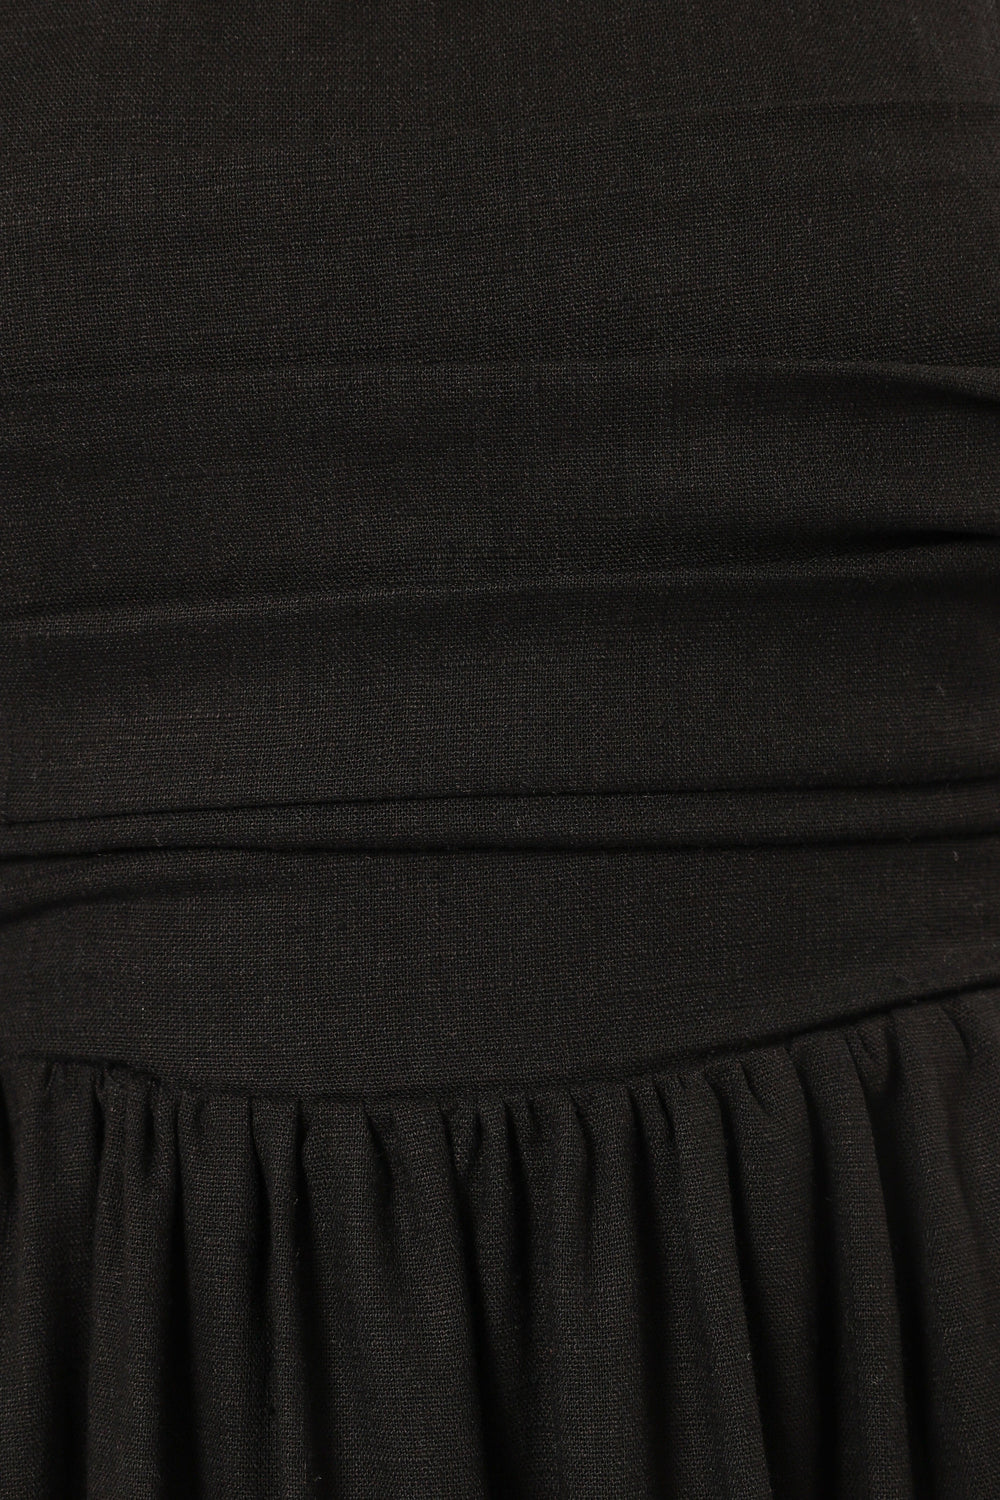 DRESSES @Kayt Strapless Dress - Black (Hold for Cool Beginnings)